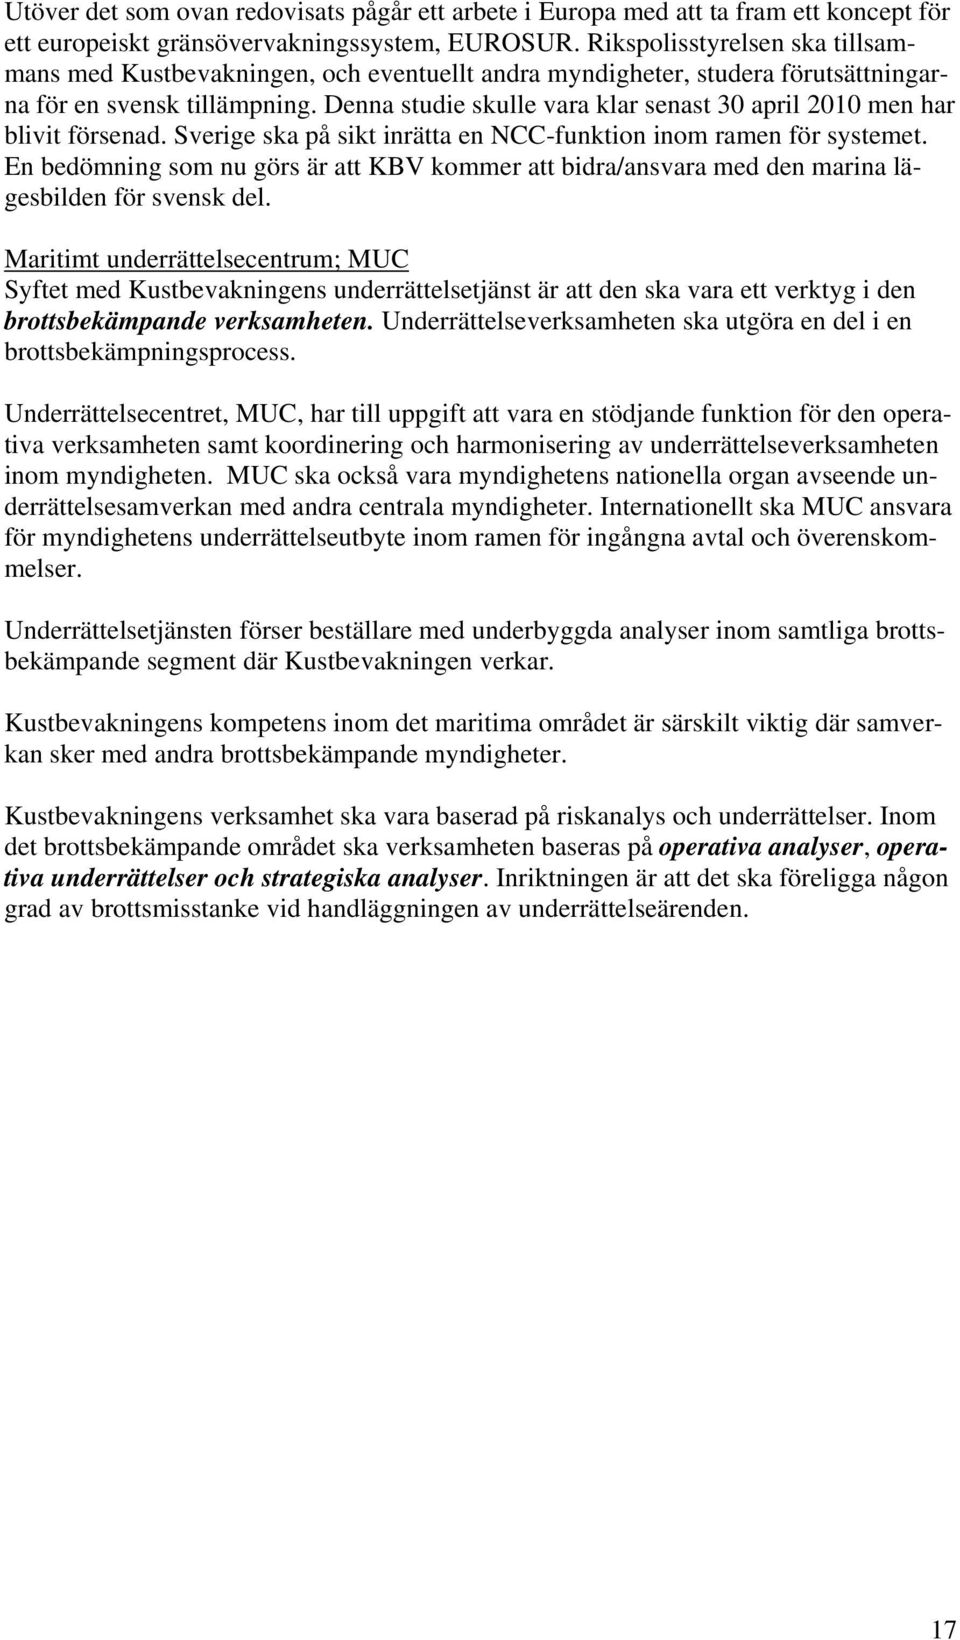 Denna studie skulle vara klar senast 30 april 2010 men har blivit försenad. Sverige ska på sikt inrätta en NCC-funktion inom ramen för systemet.